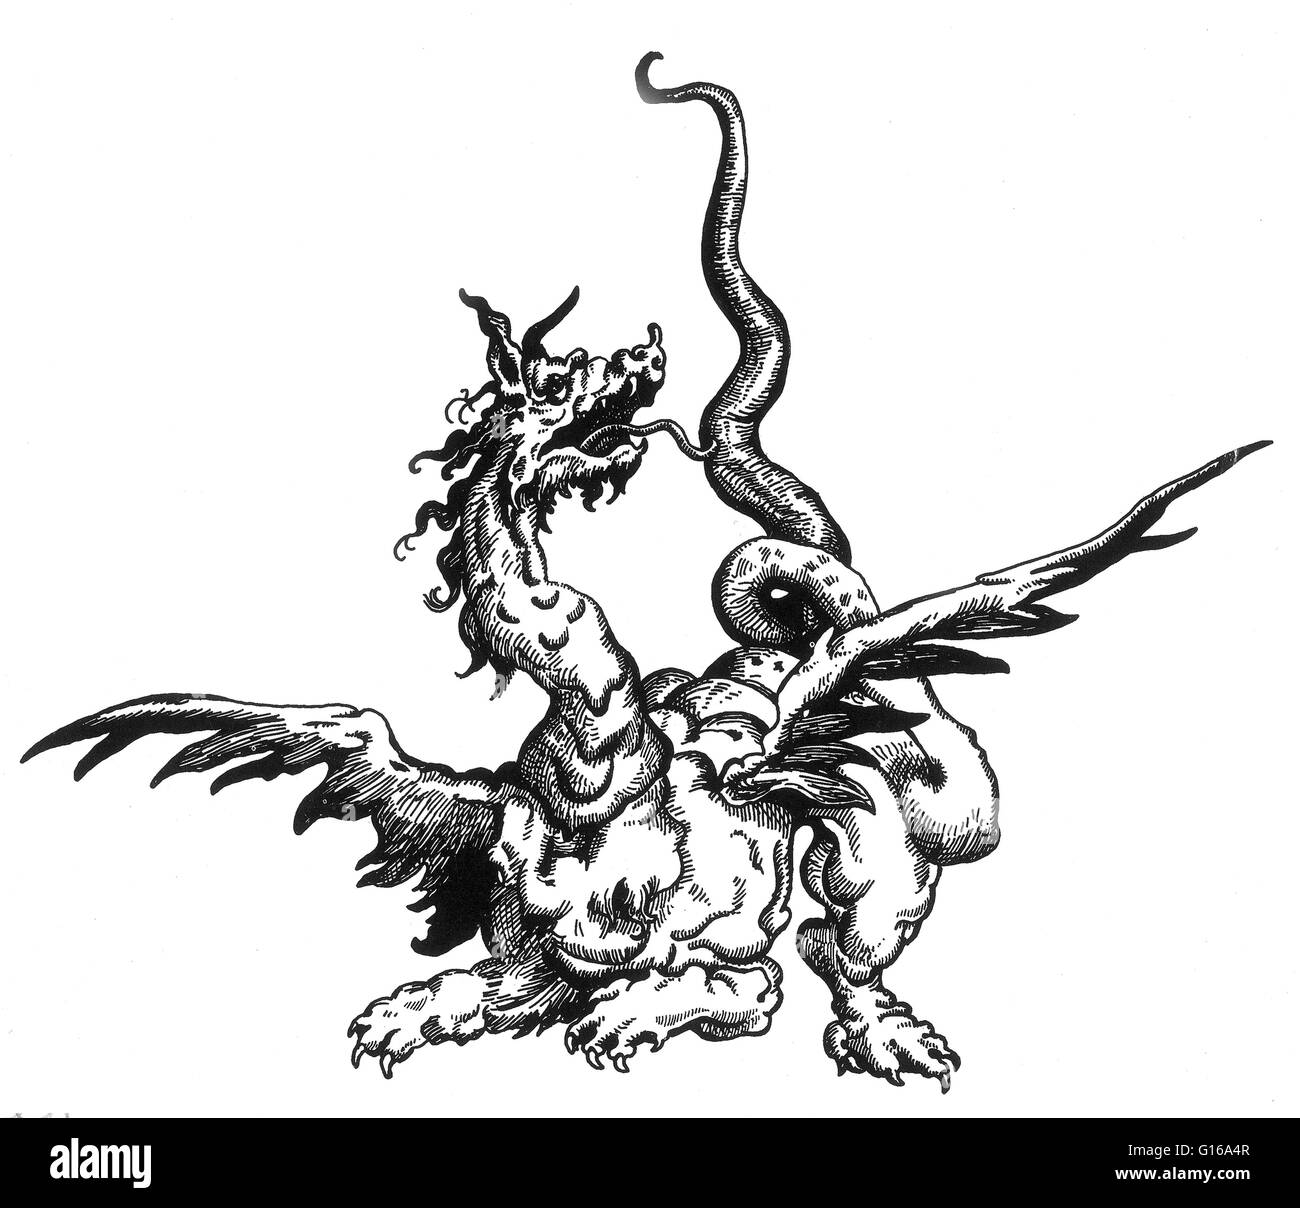 Il drago è una creatura leggendaria, tipicamente con serpentina o tratti di rettili, che funzioni nei miti di molte culture. Vi sono due diverse tradizioni culturali dei draghi: il drago europeo, derivata dalla unione di tradizioni popolari e infine Foto Stock